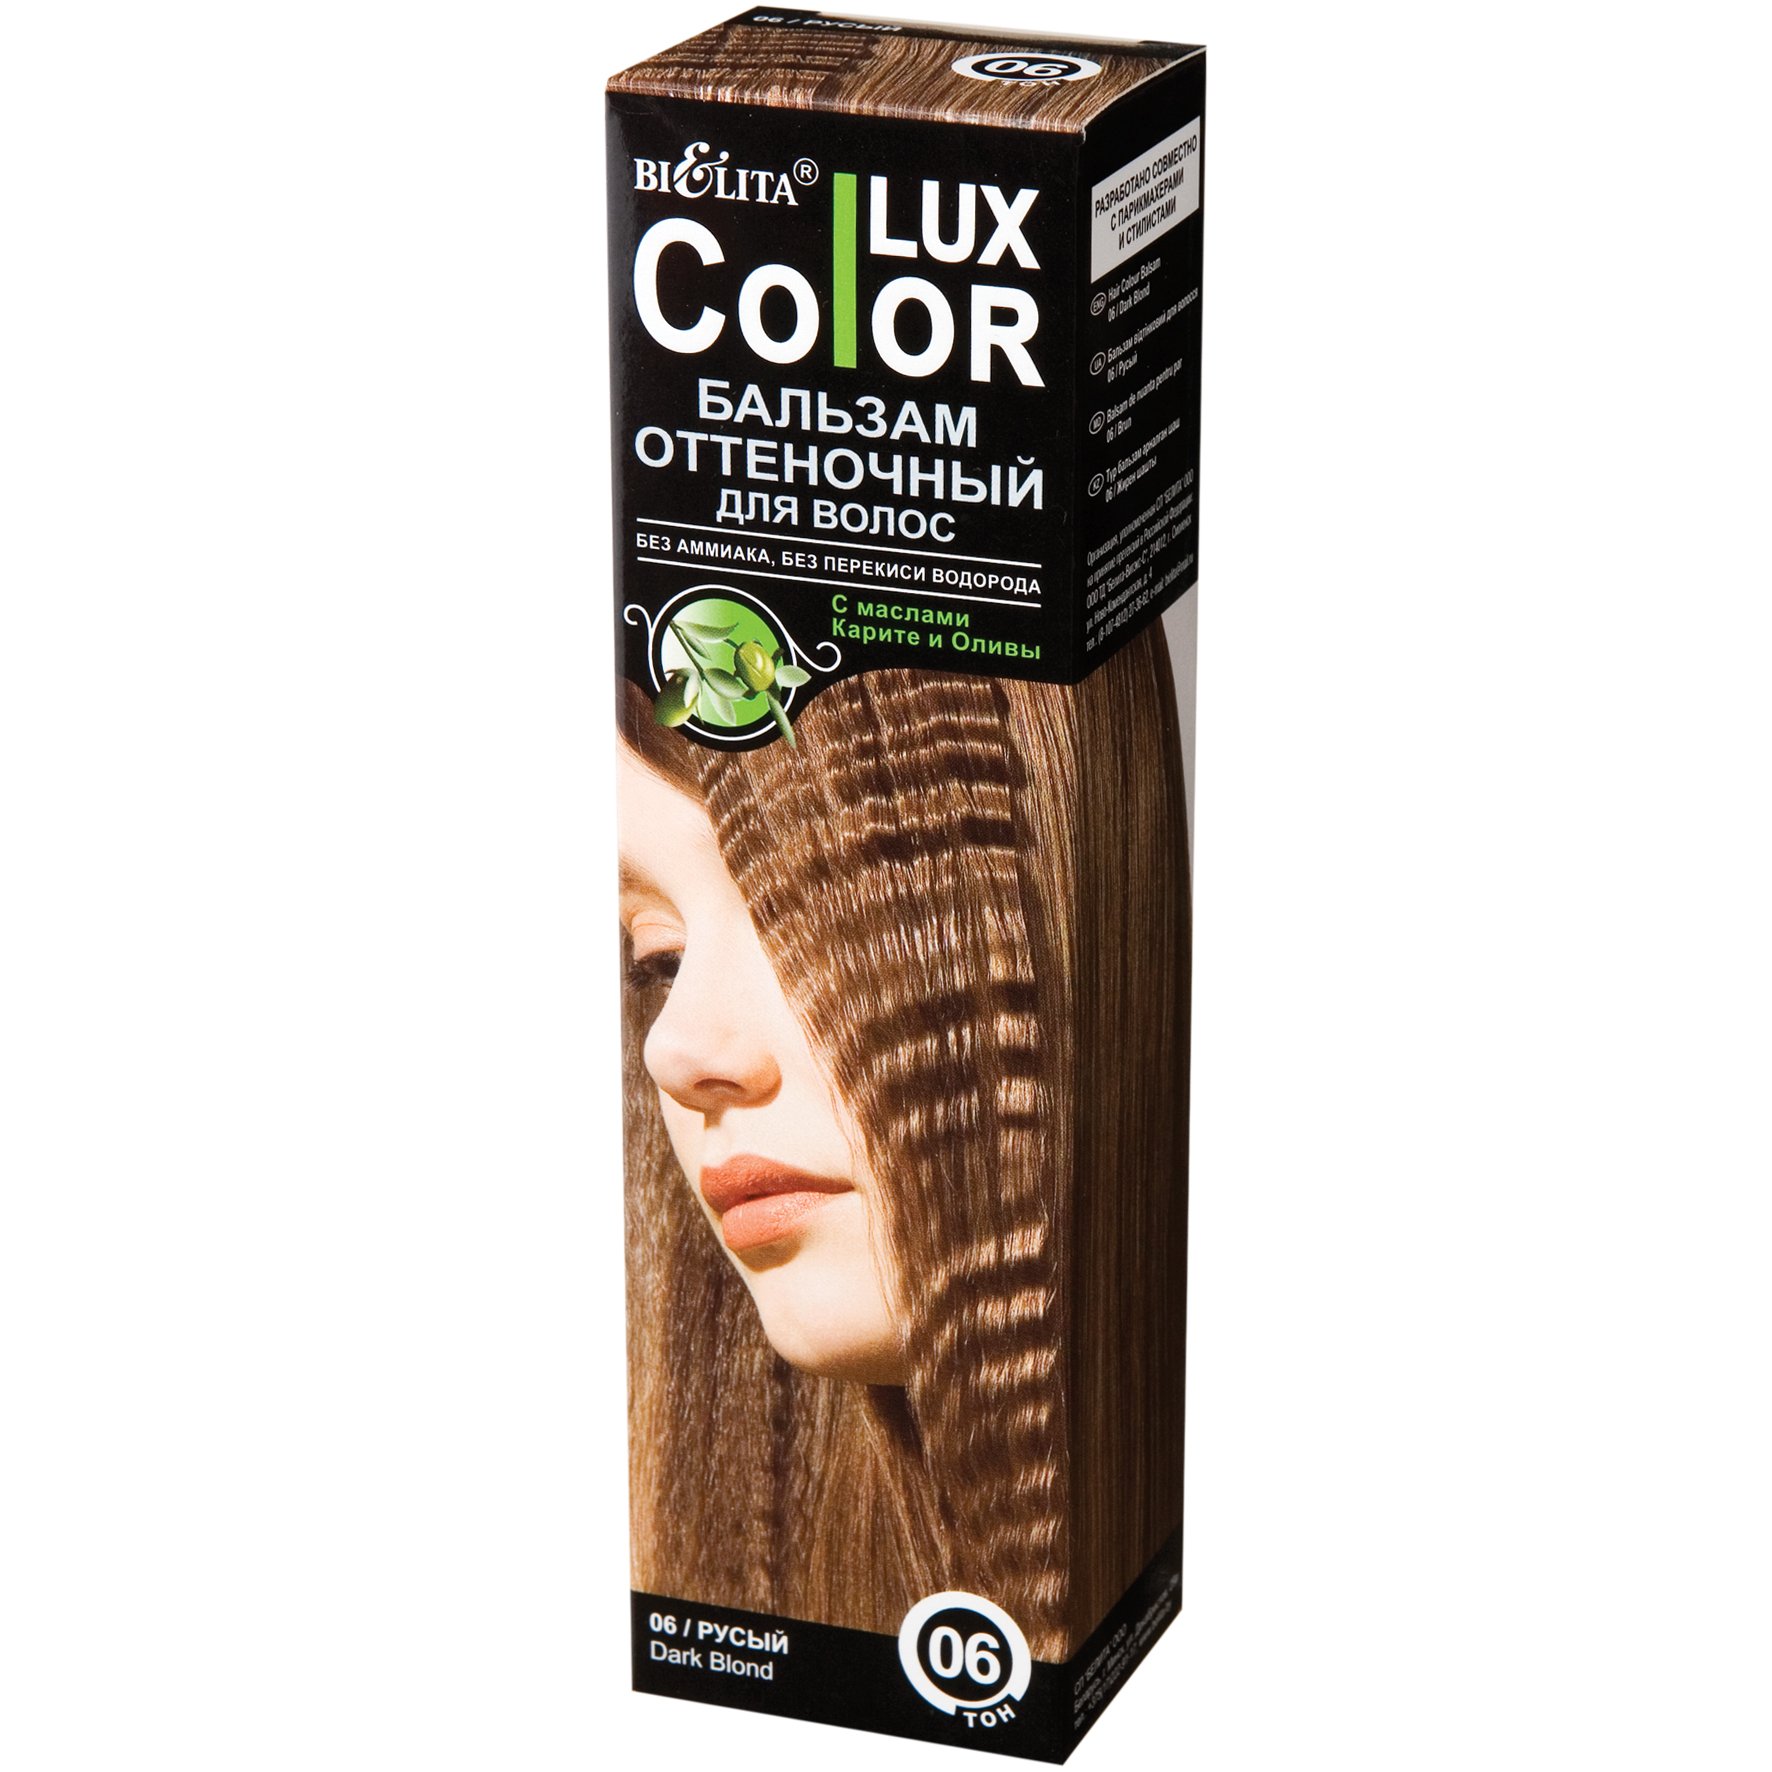 Белита Оттеночный бальзам для волос «COLOR LUX» тон 06-ann_img